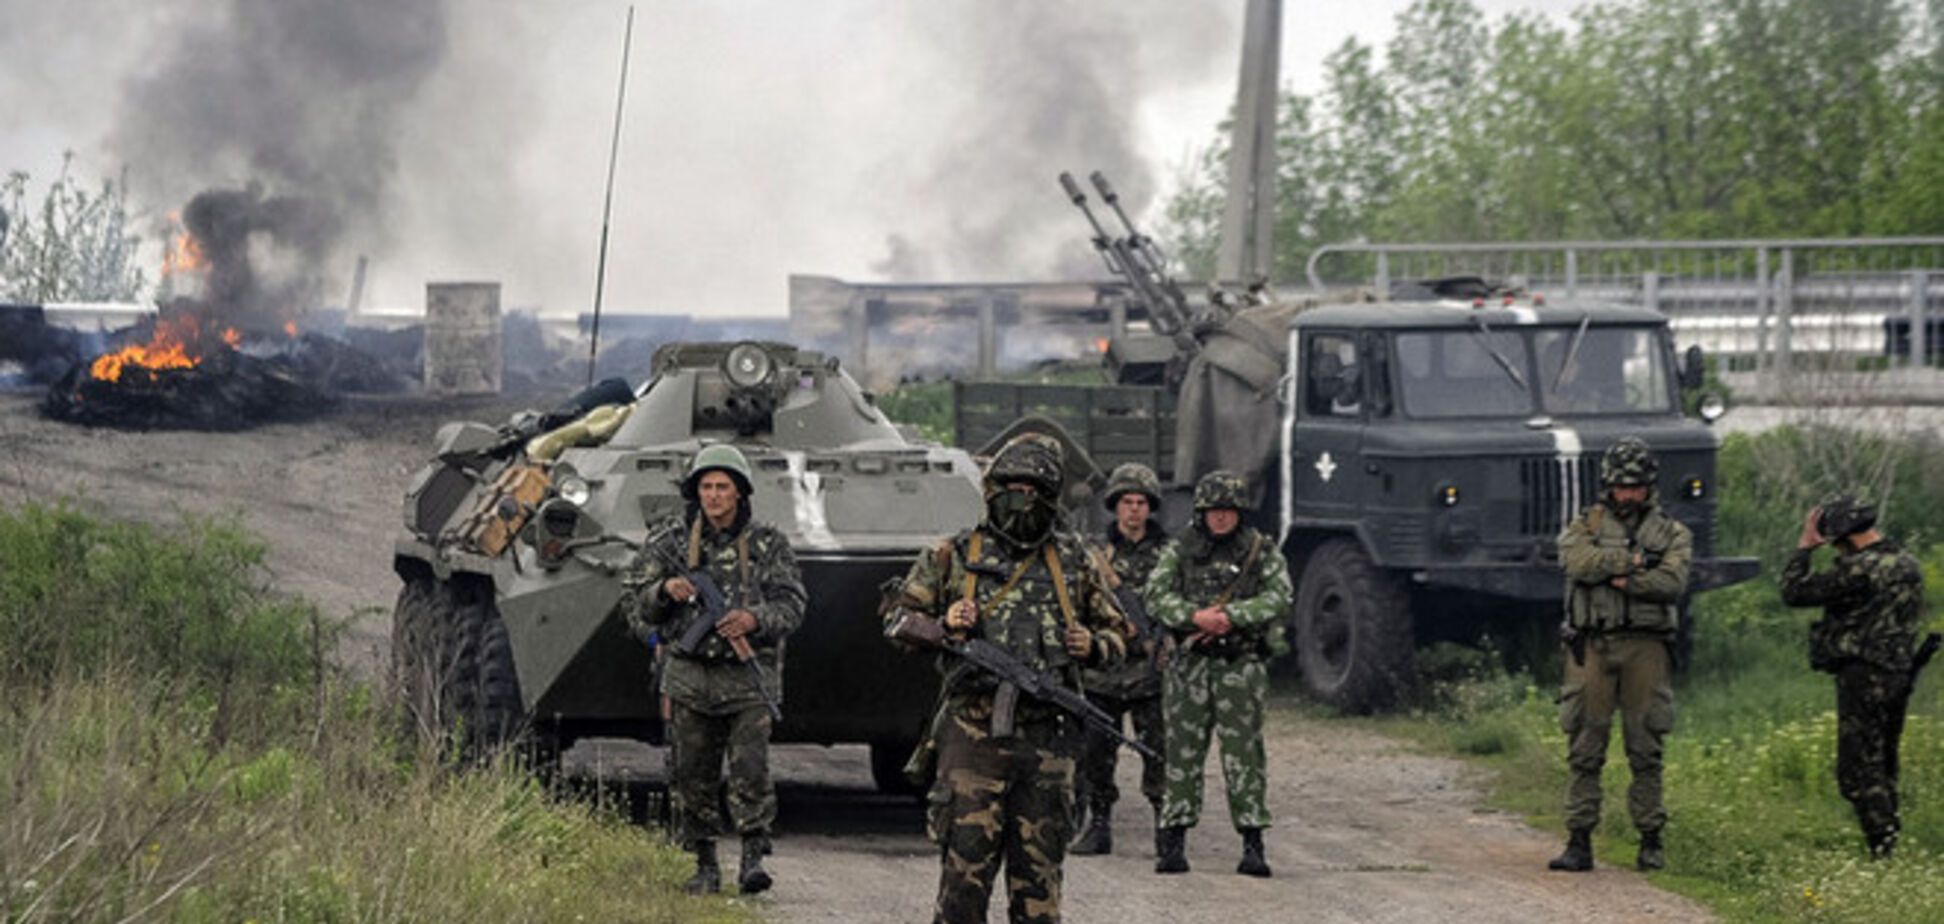 Лидеры стран G7 назвали сдержанными действия сил АТО на Донбассе